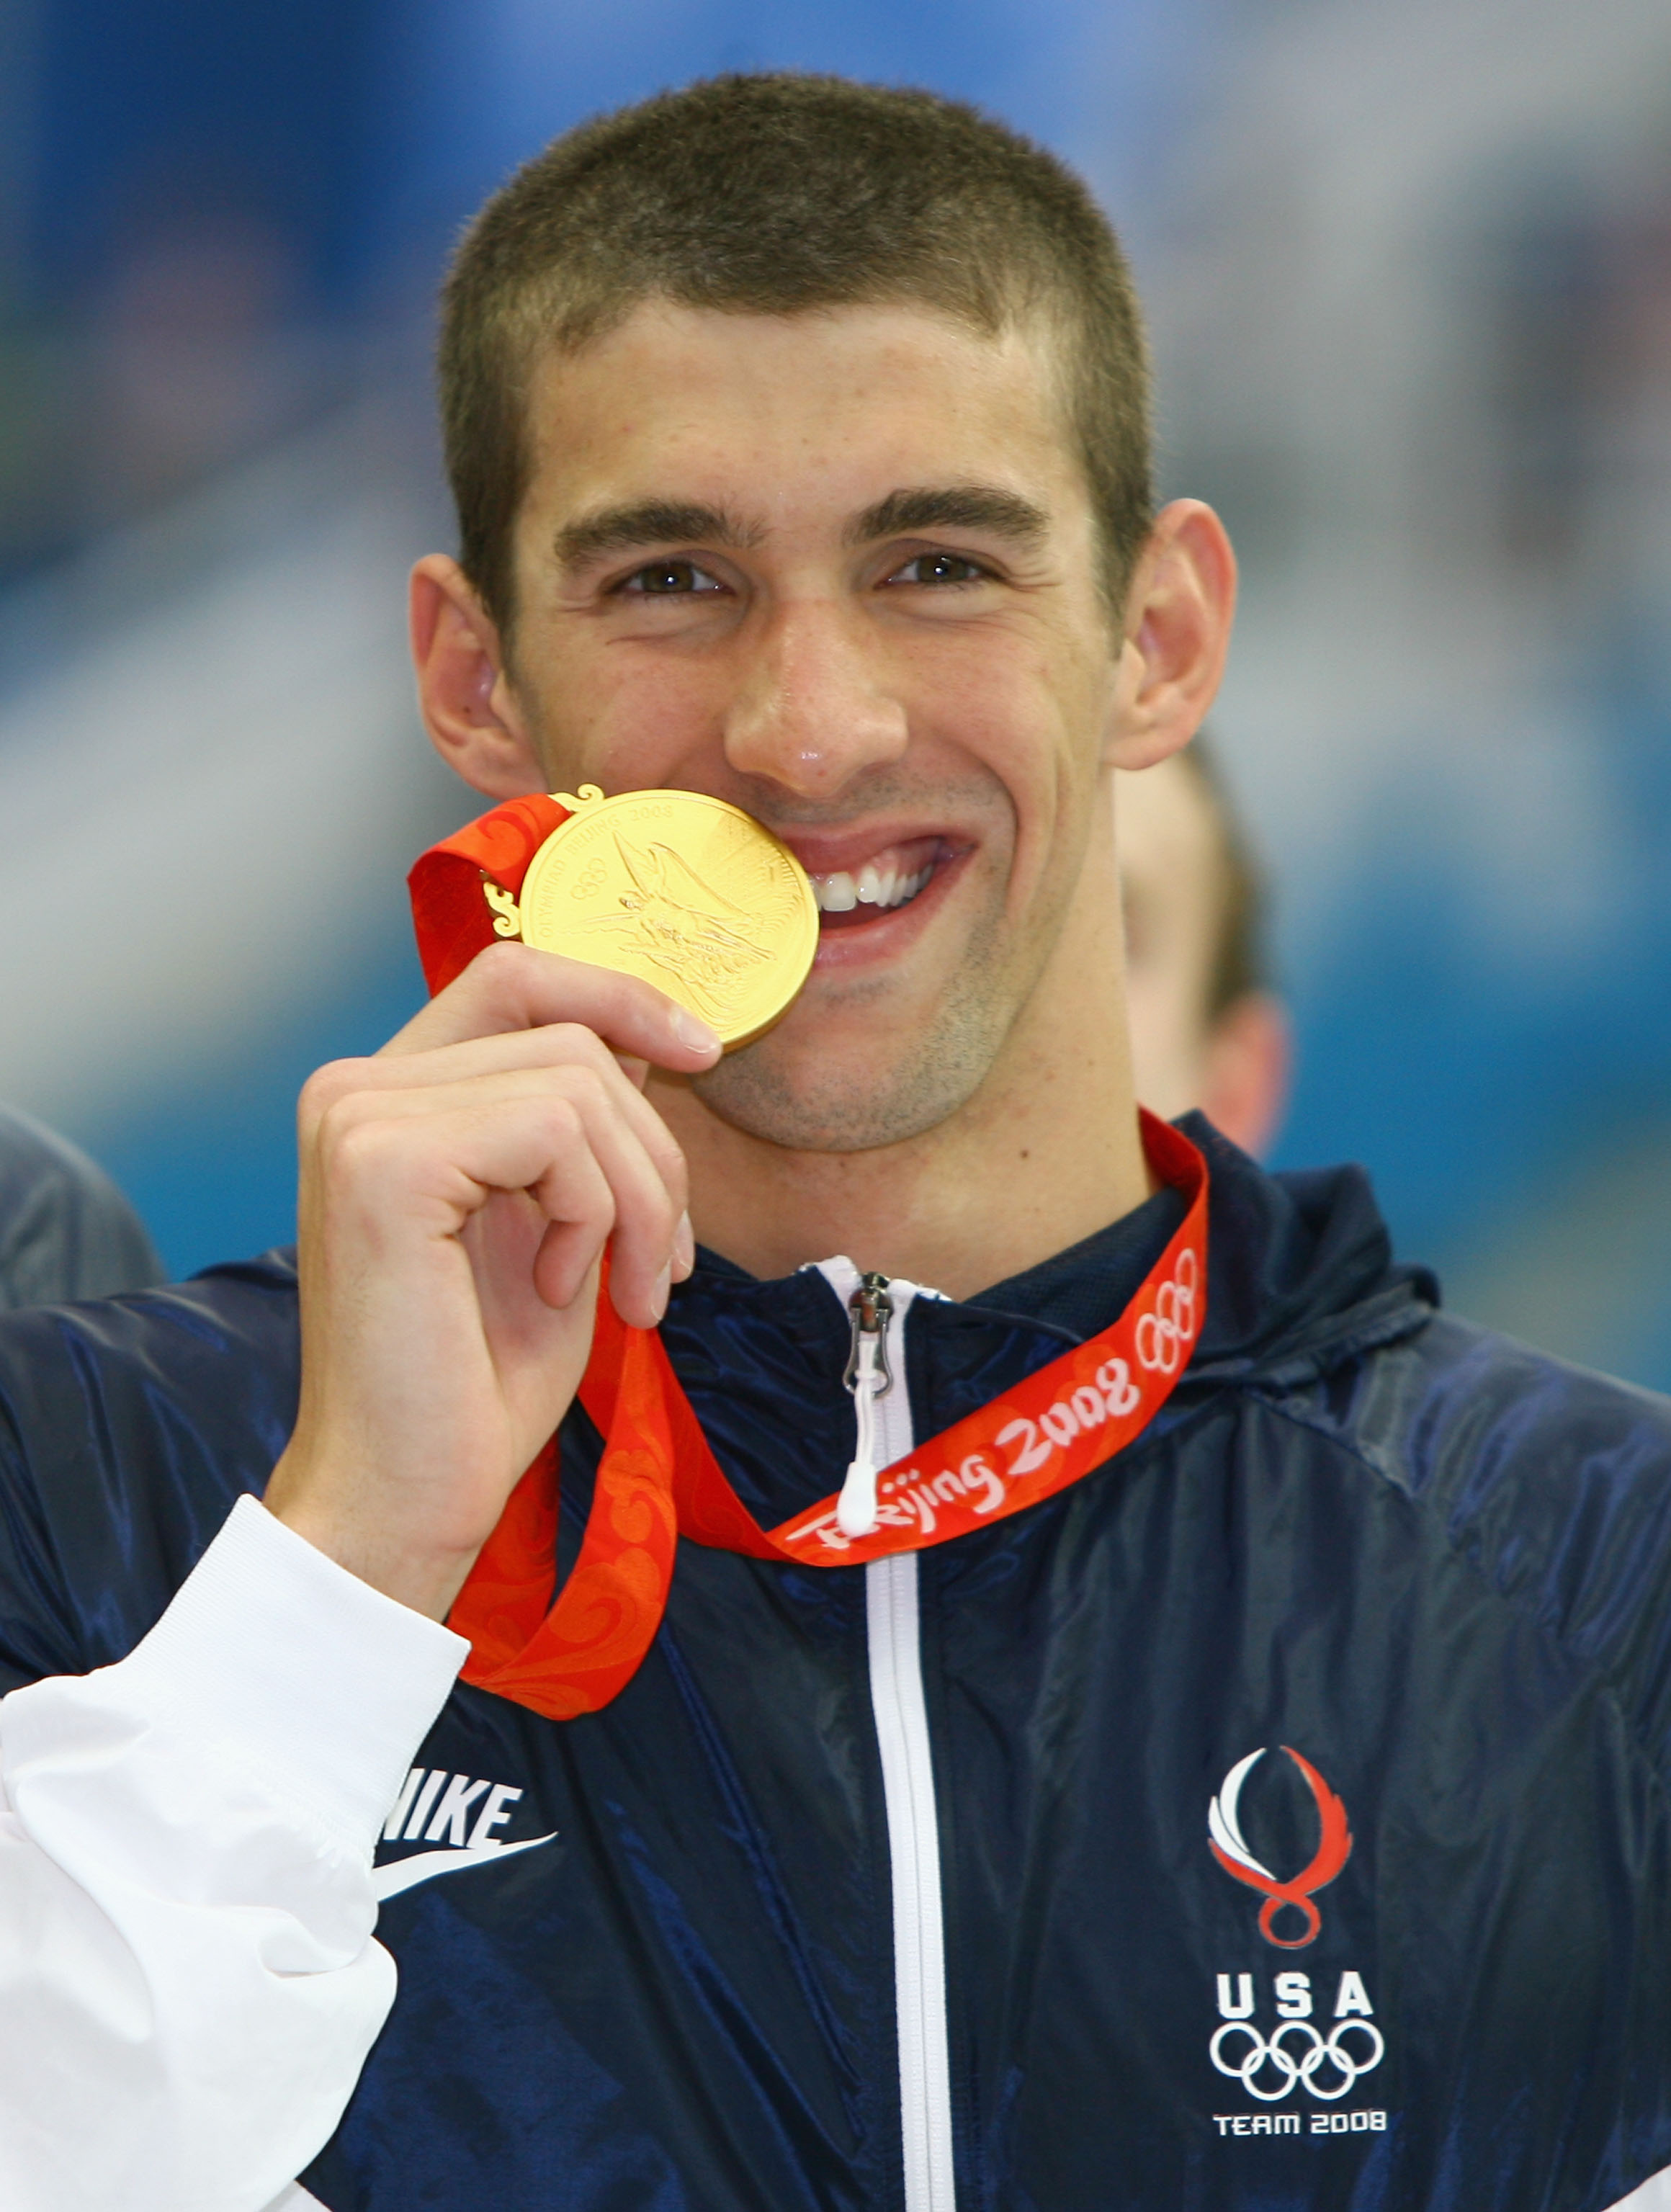 Michael Phelps sågas vid fotknölarna: "Det är en skam att han inte tränar lika hårt som alla andra".